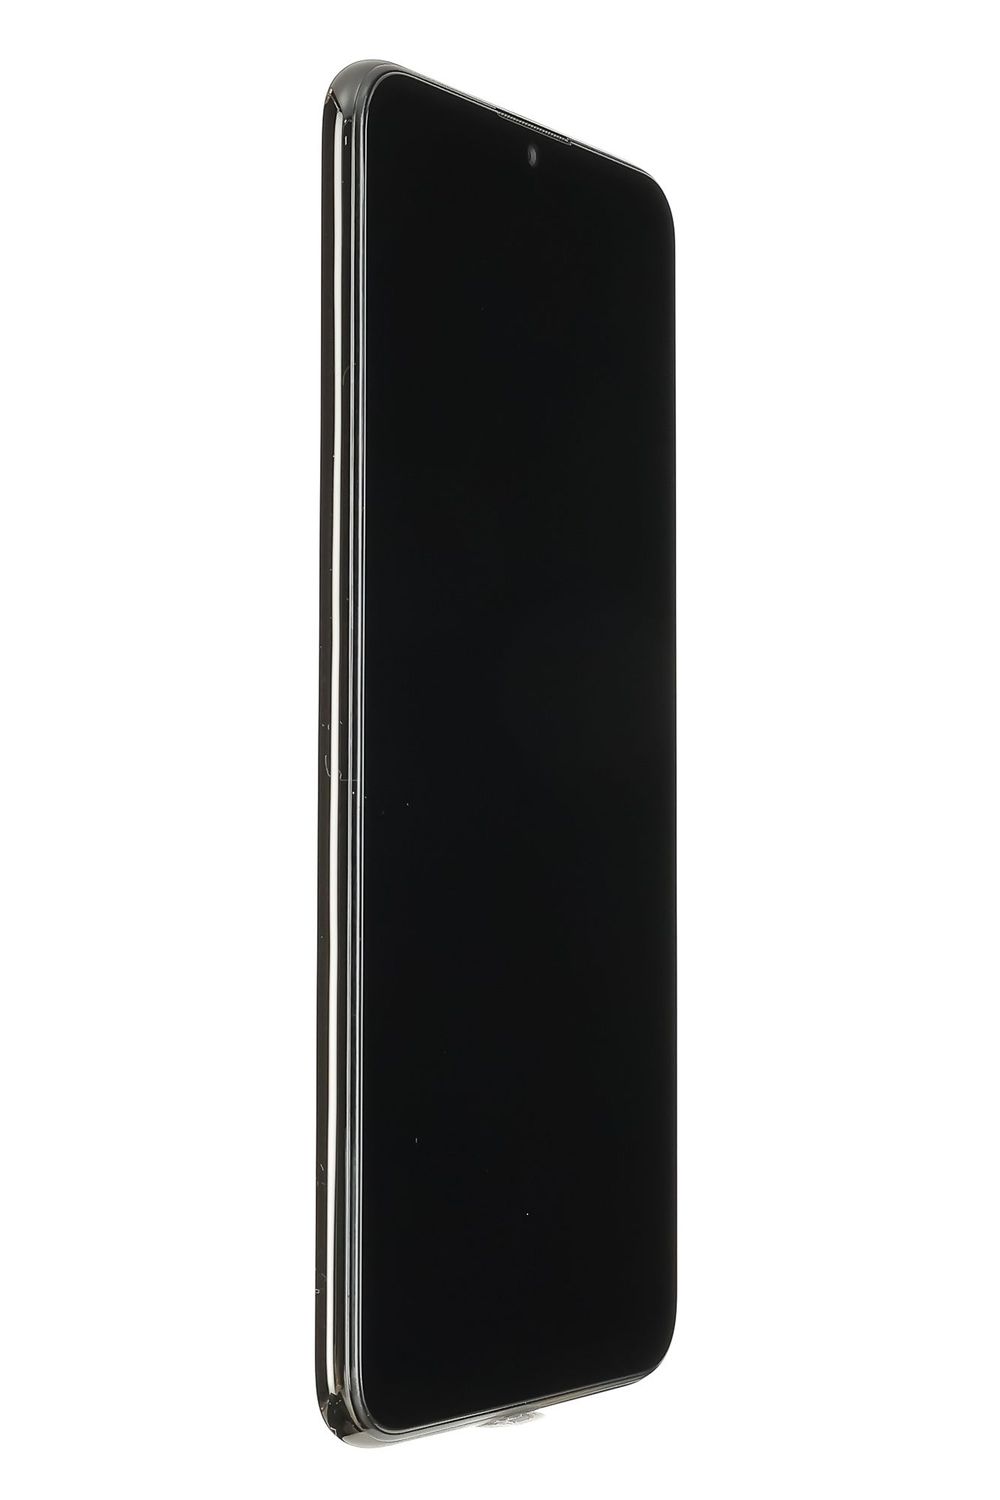 Κινητό τηλέφωνο Huawei P Smart (2019), Midnight Black, 32 GB, Bun